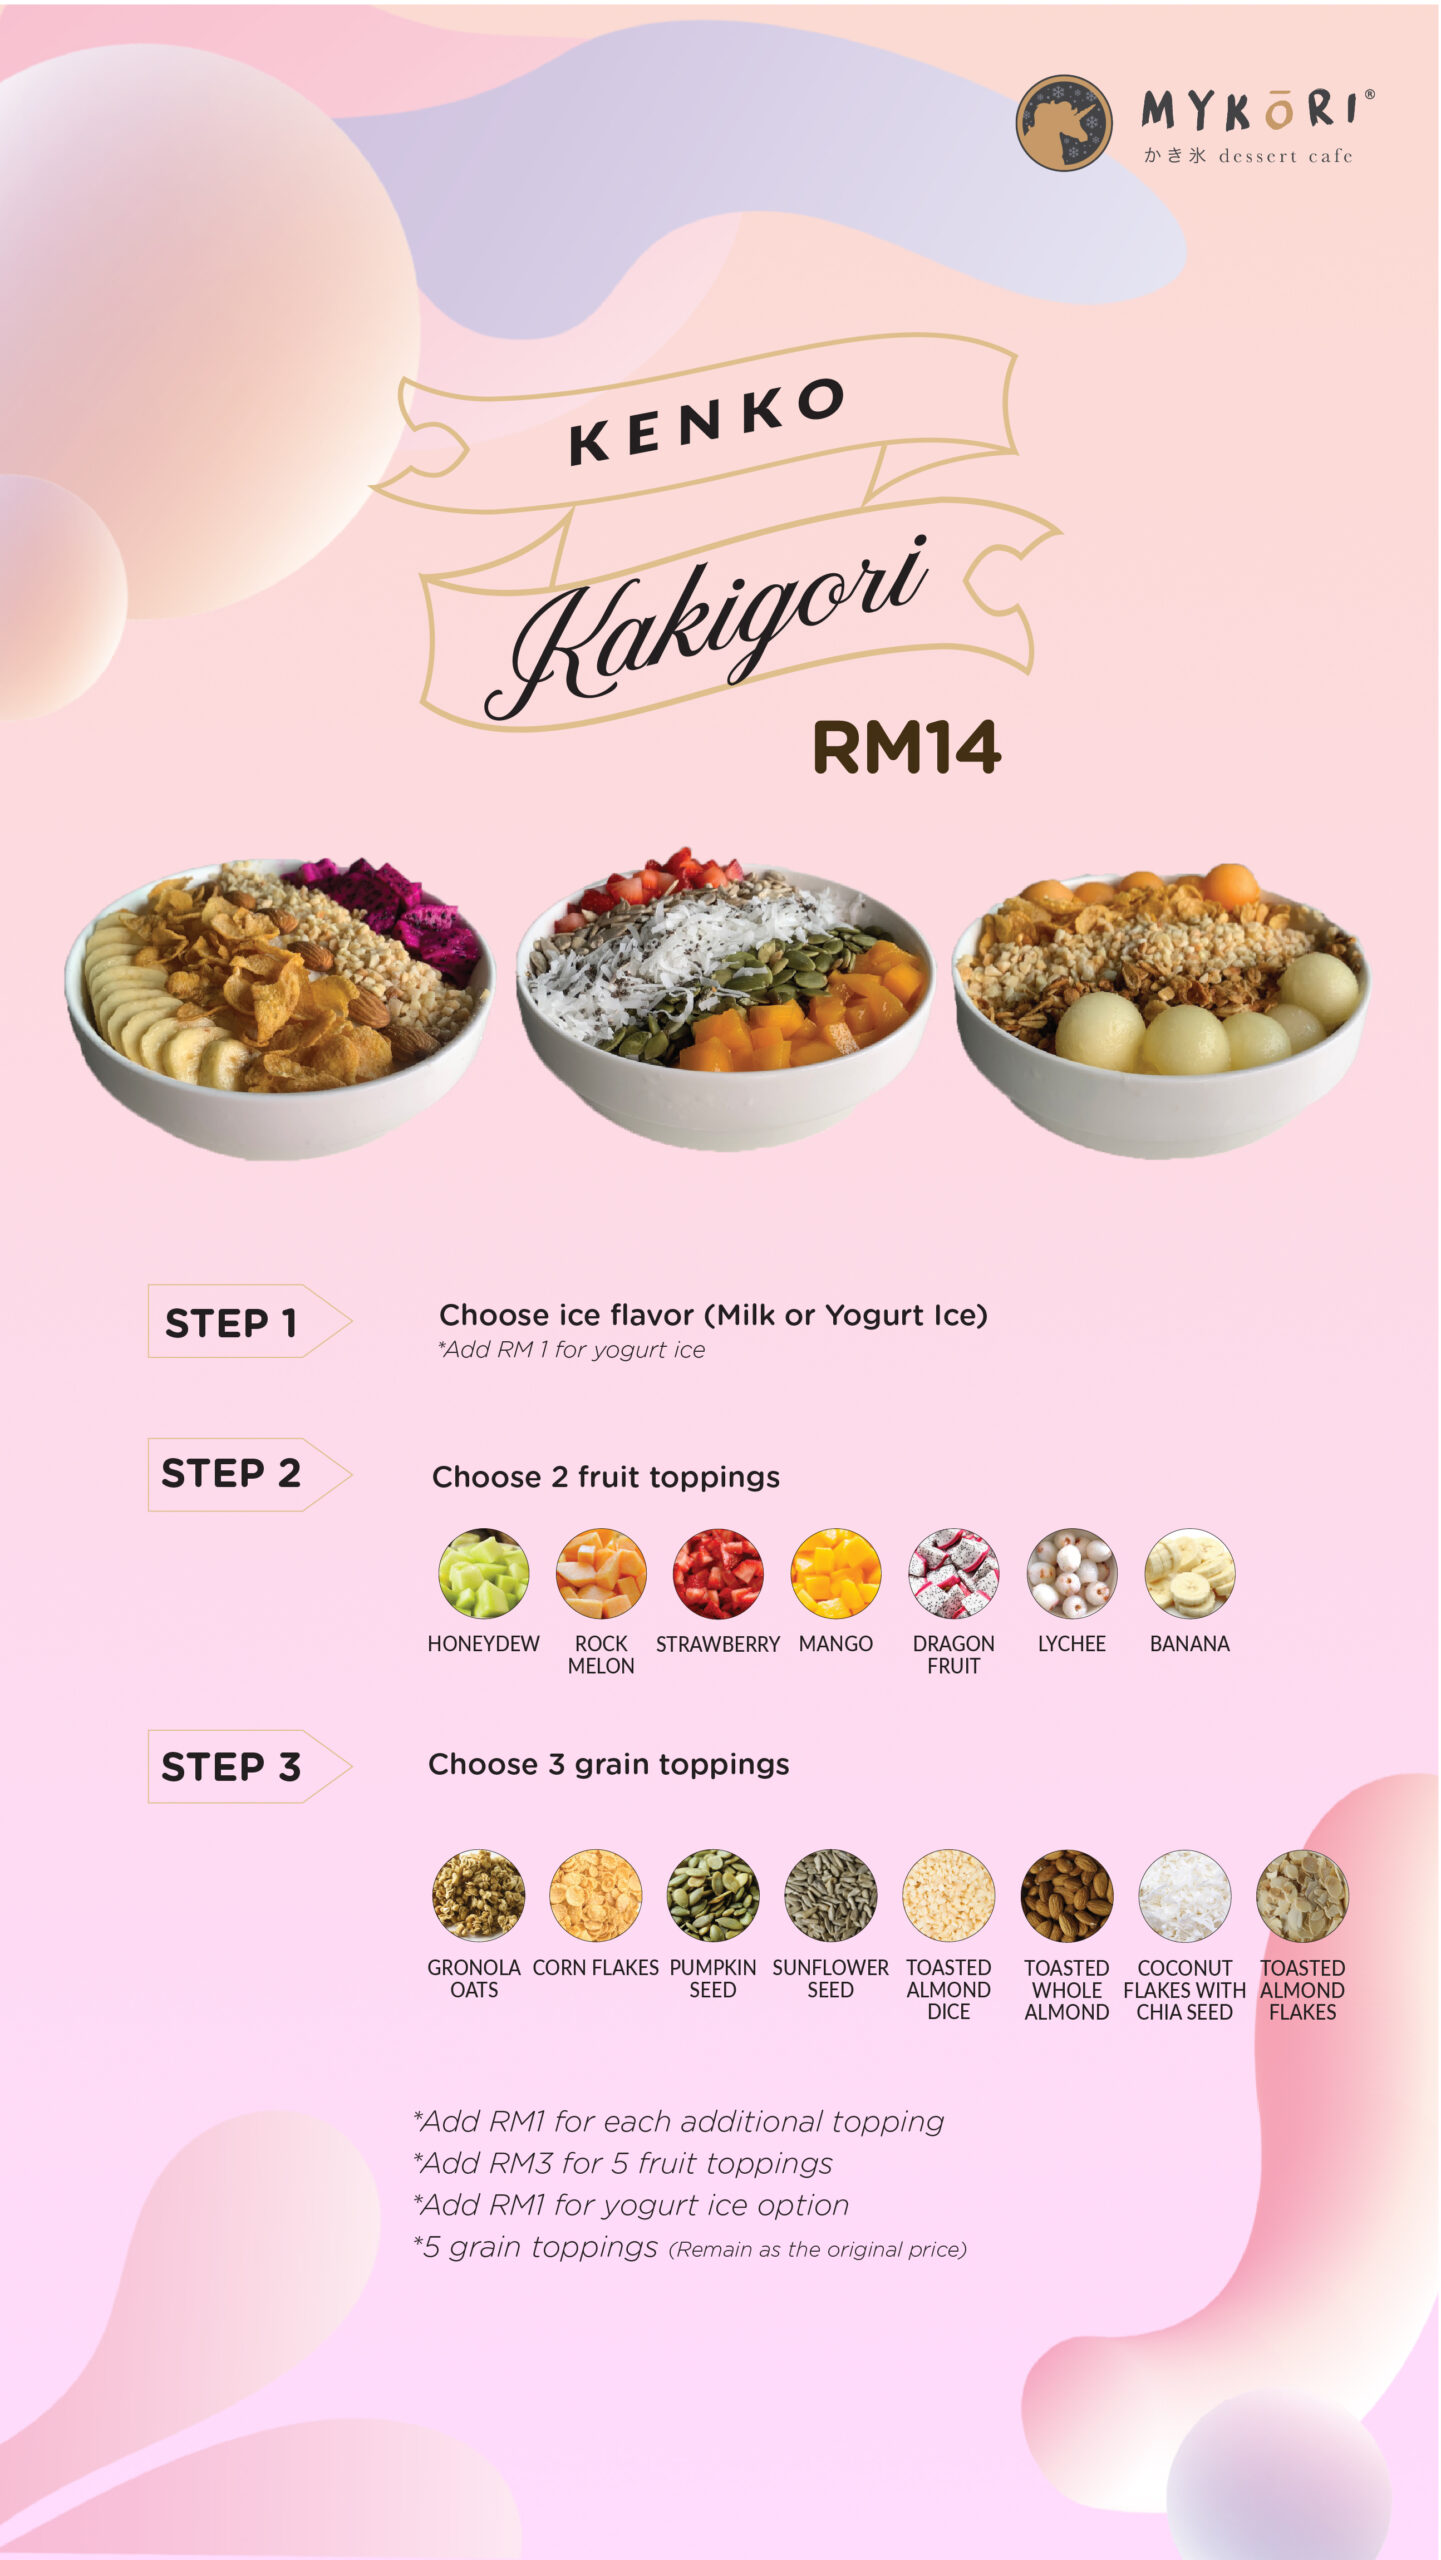 Price mykori menu and MyKori Seberang